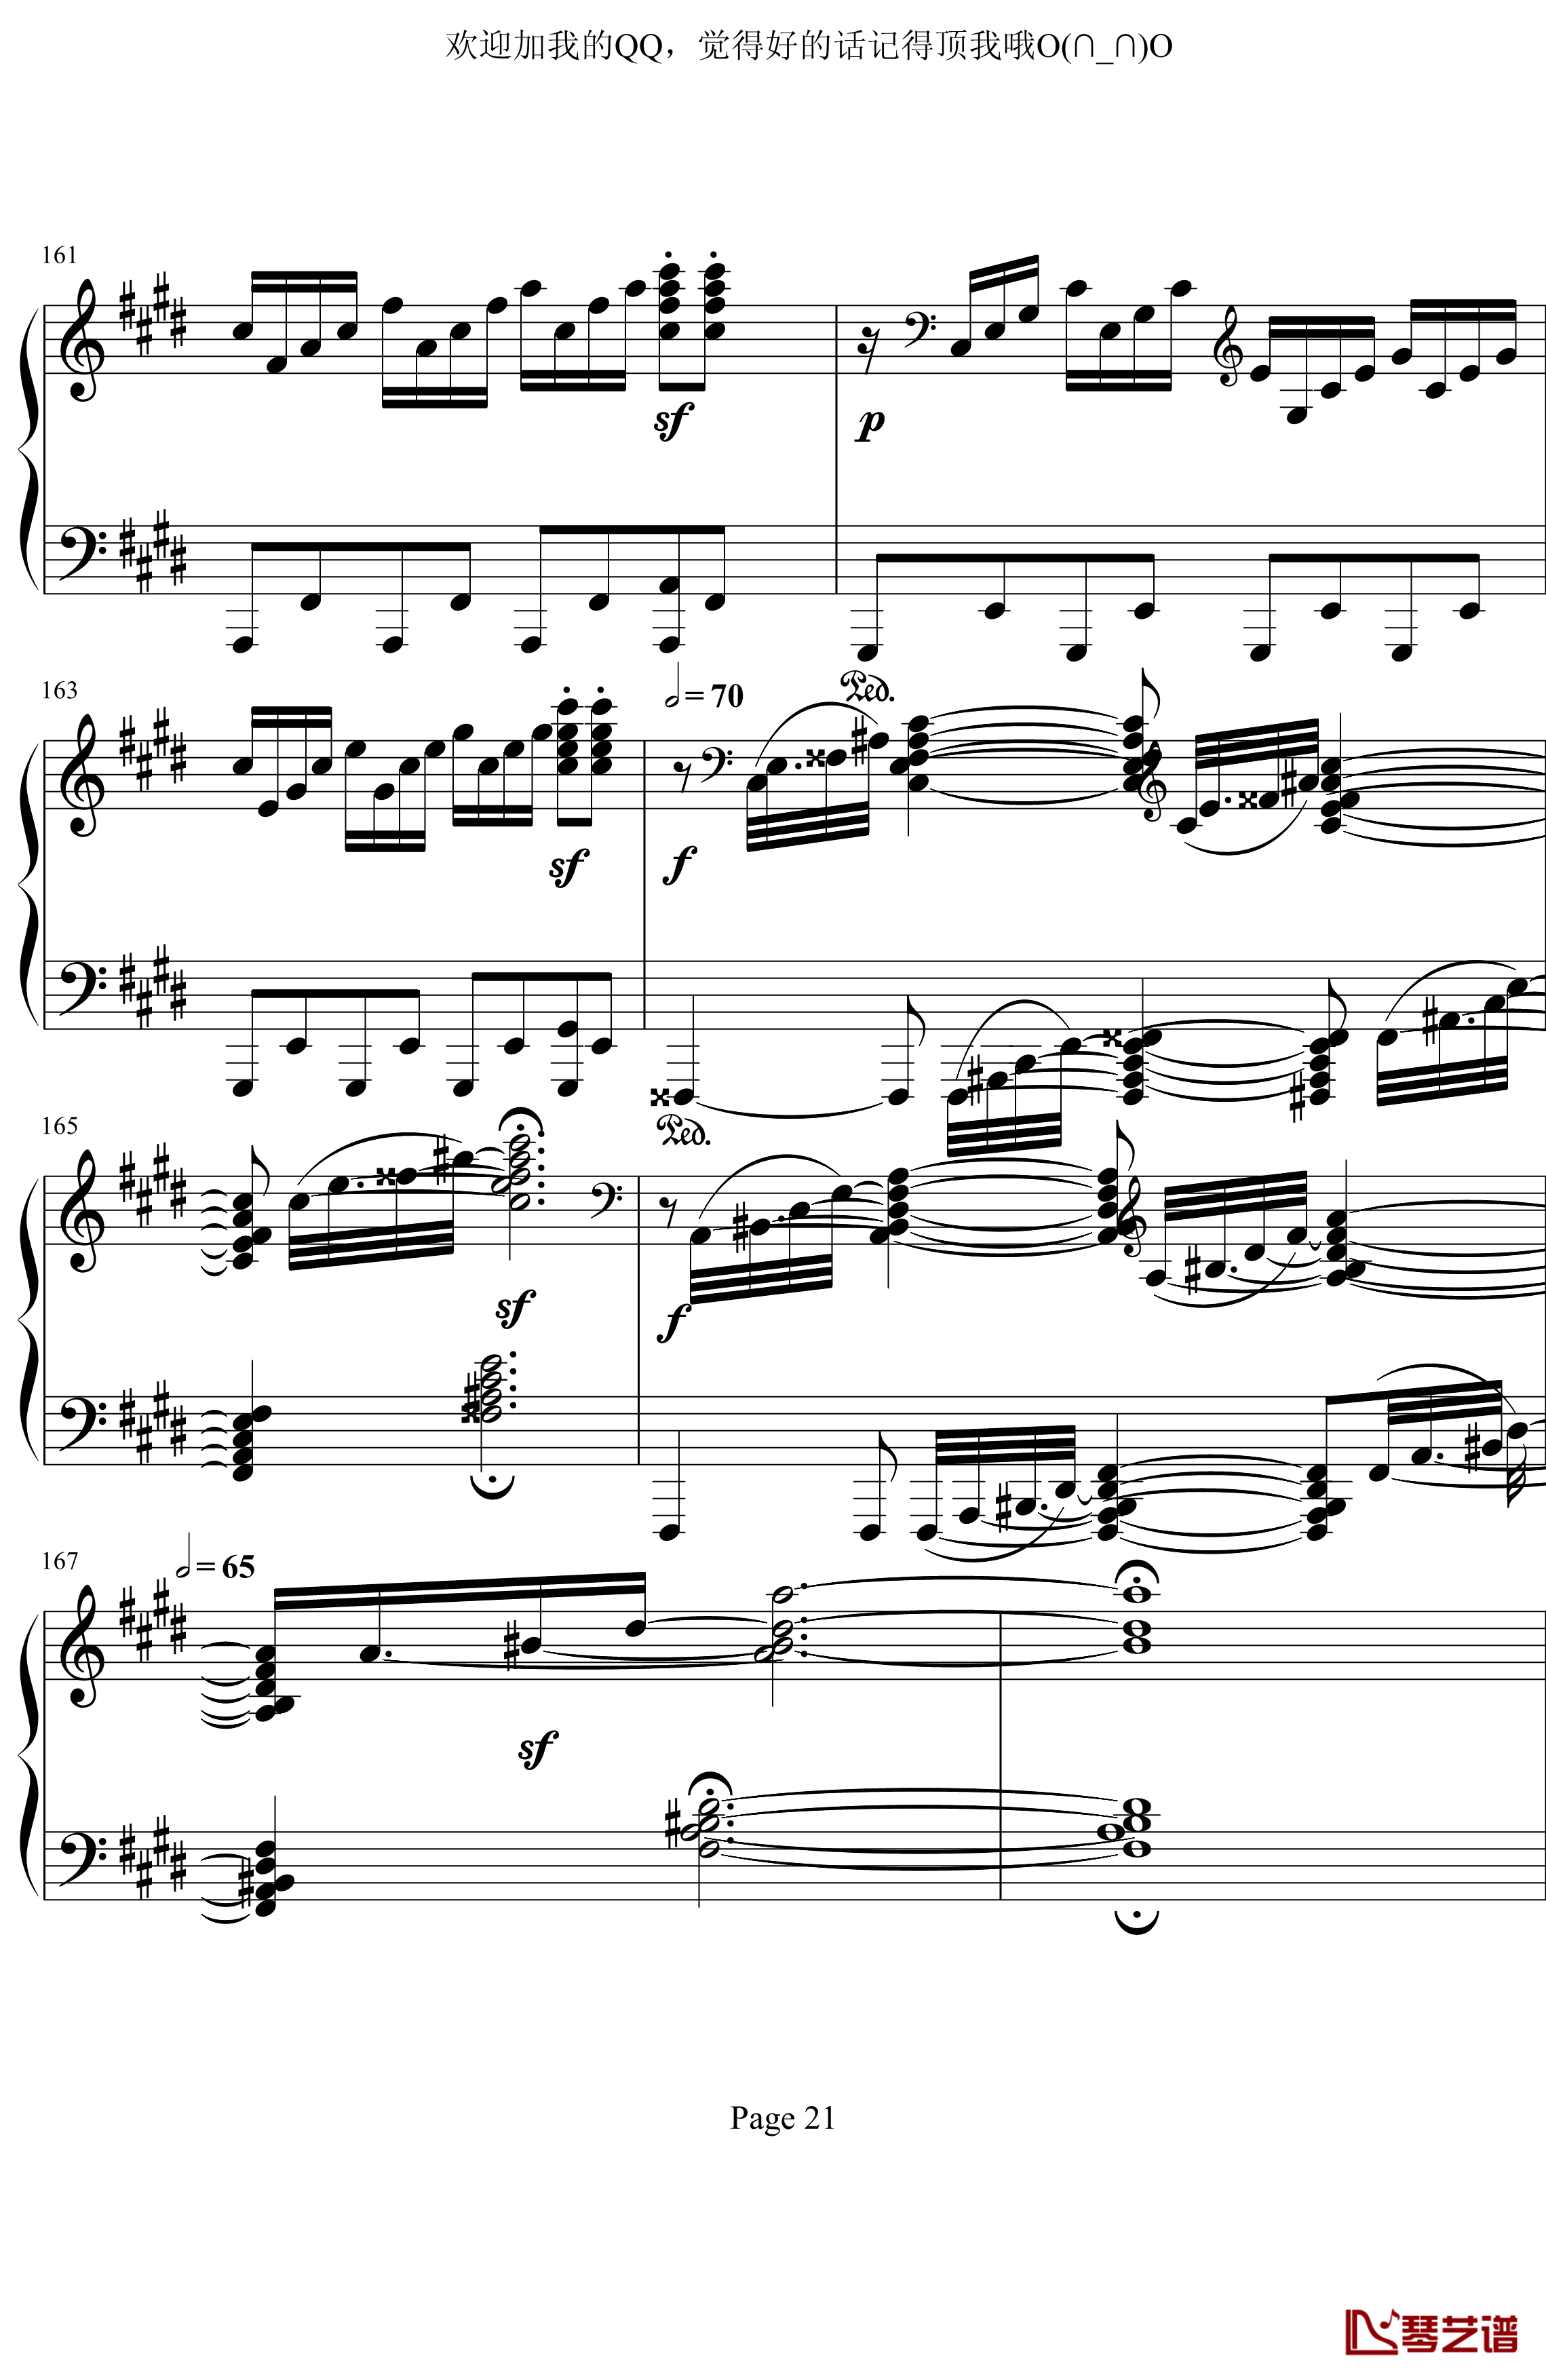 月光奏鸣曲第三乐章钢琴谱-贝多芬-beethoven21